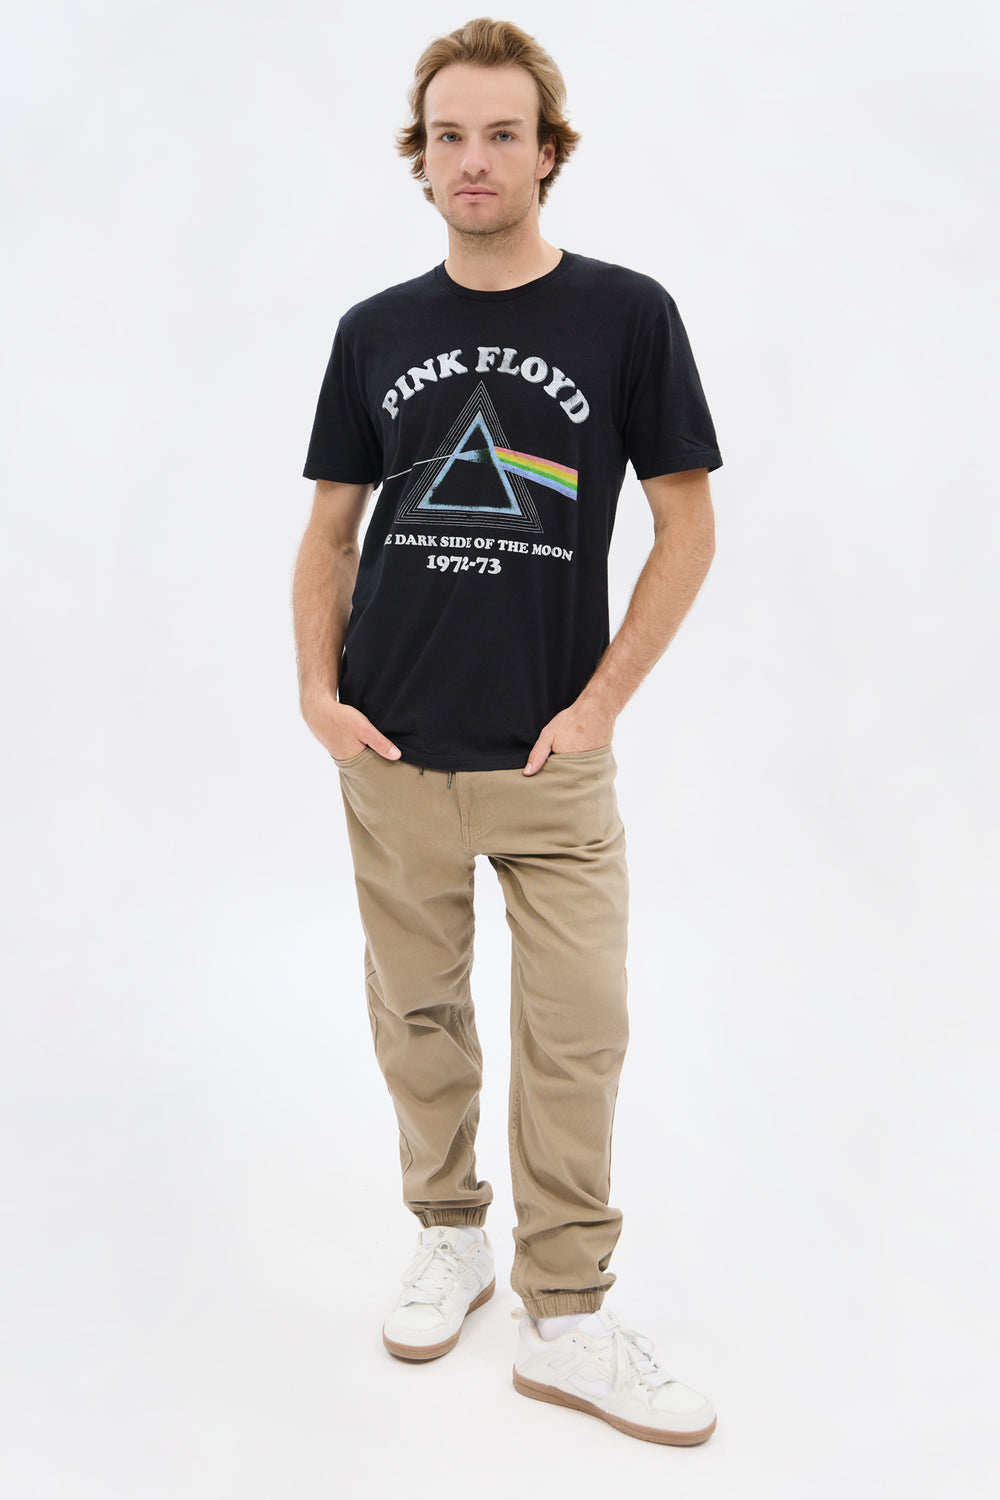 Mens Pink Floyd T-Shirt Mens Pink Floyd T-Shirt